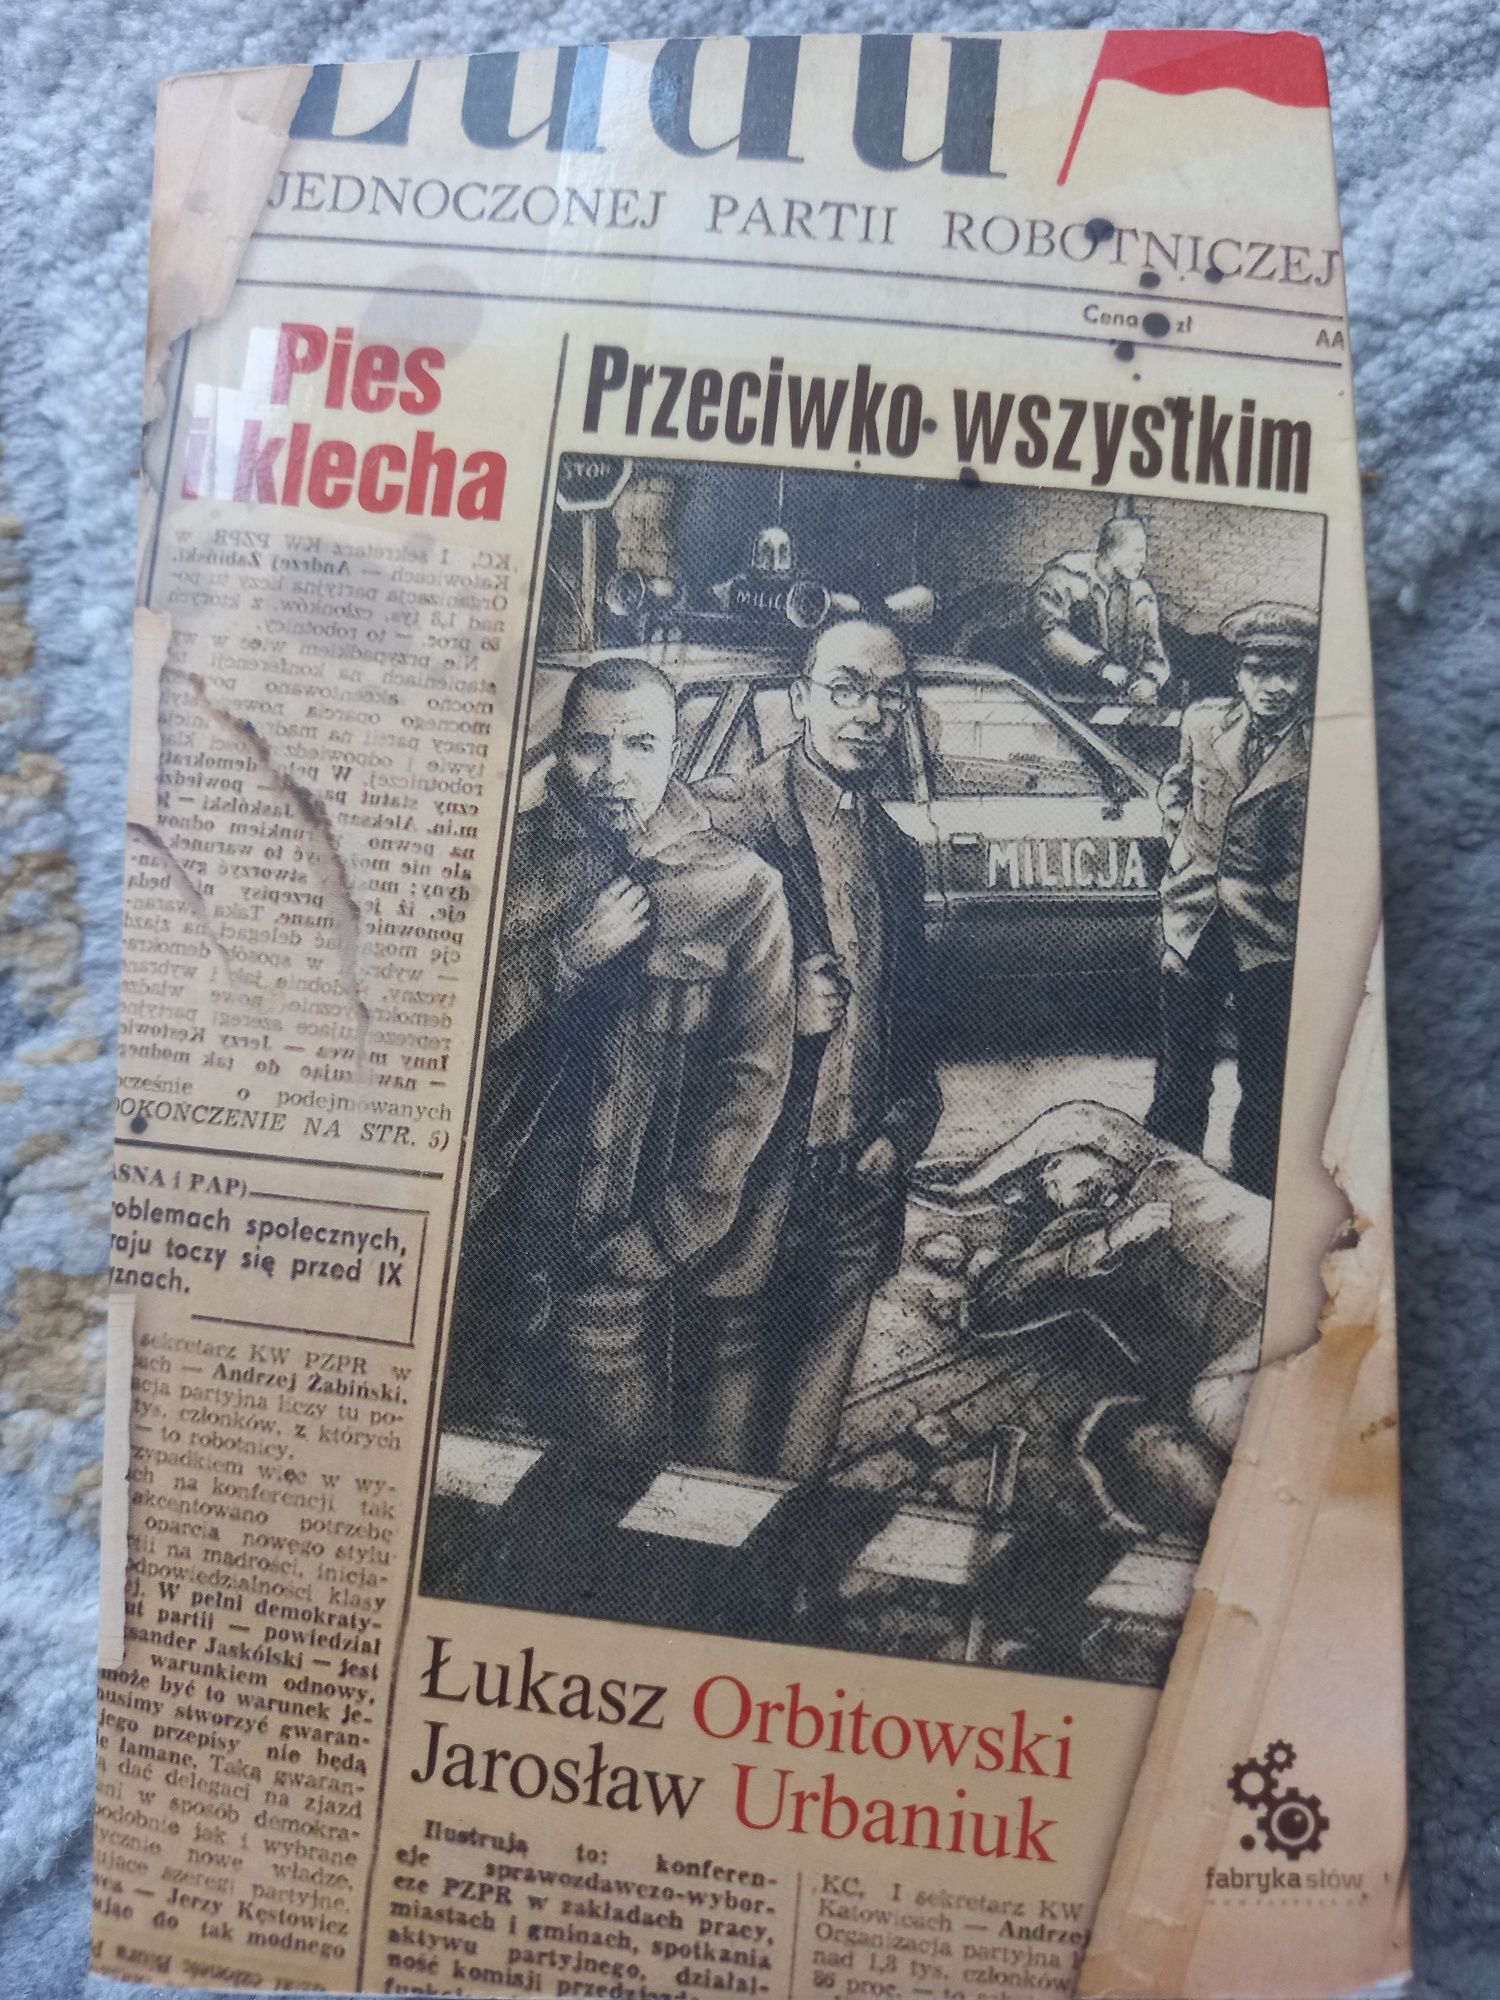 Pies i klecha - Przeciwko wszystkim (tom 1) Ł. Orbitowski, J. Urbaniuk